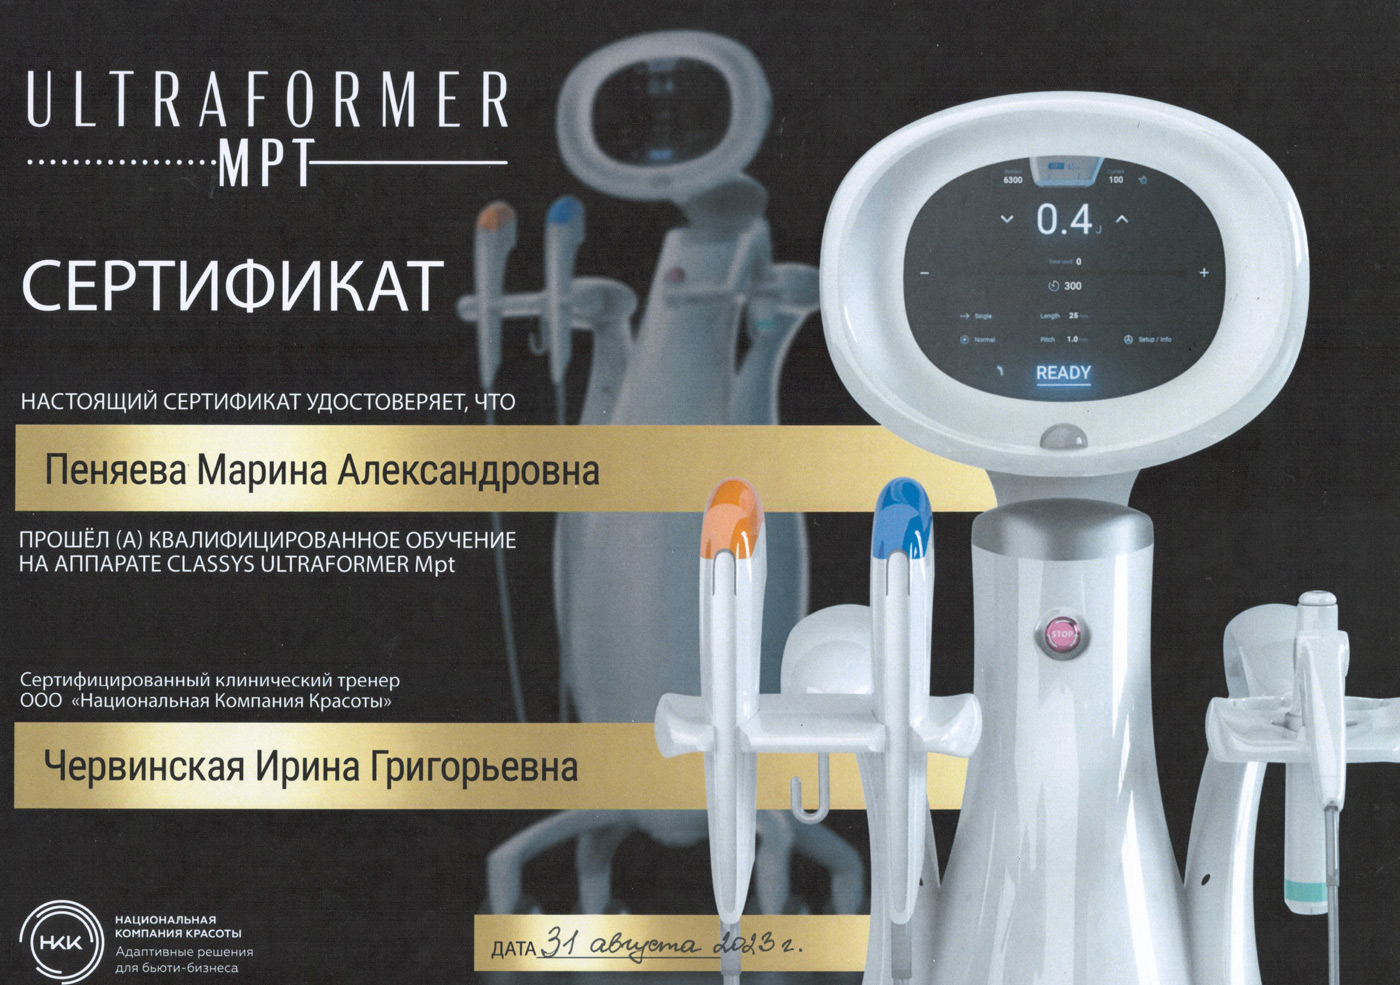 Сертификат — «Квалифицированное обучение на аппарате Classys Ultraformer MPT». Пеняева Марина Александровна